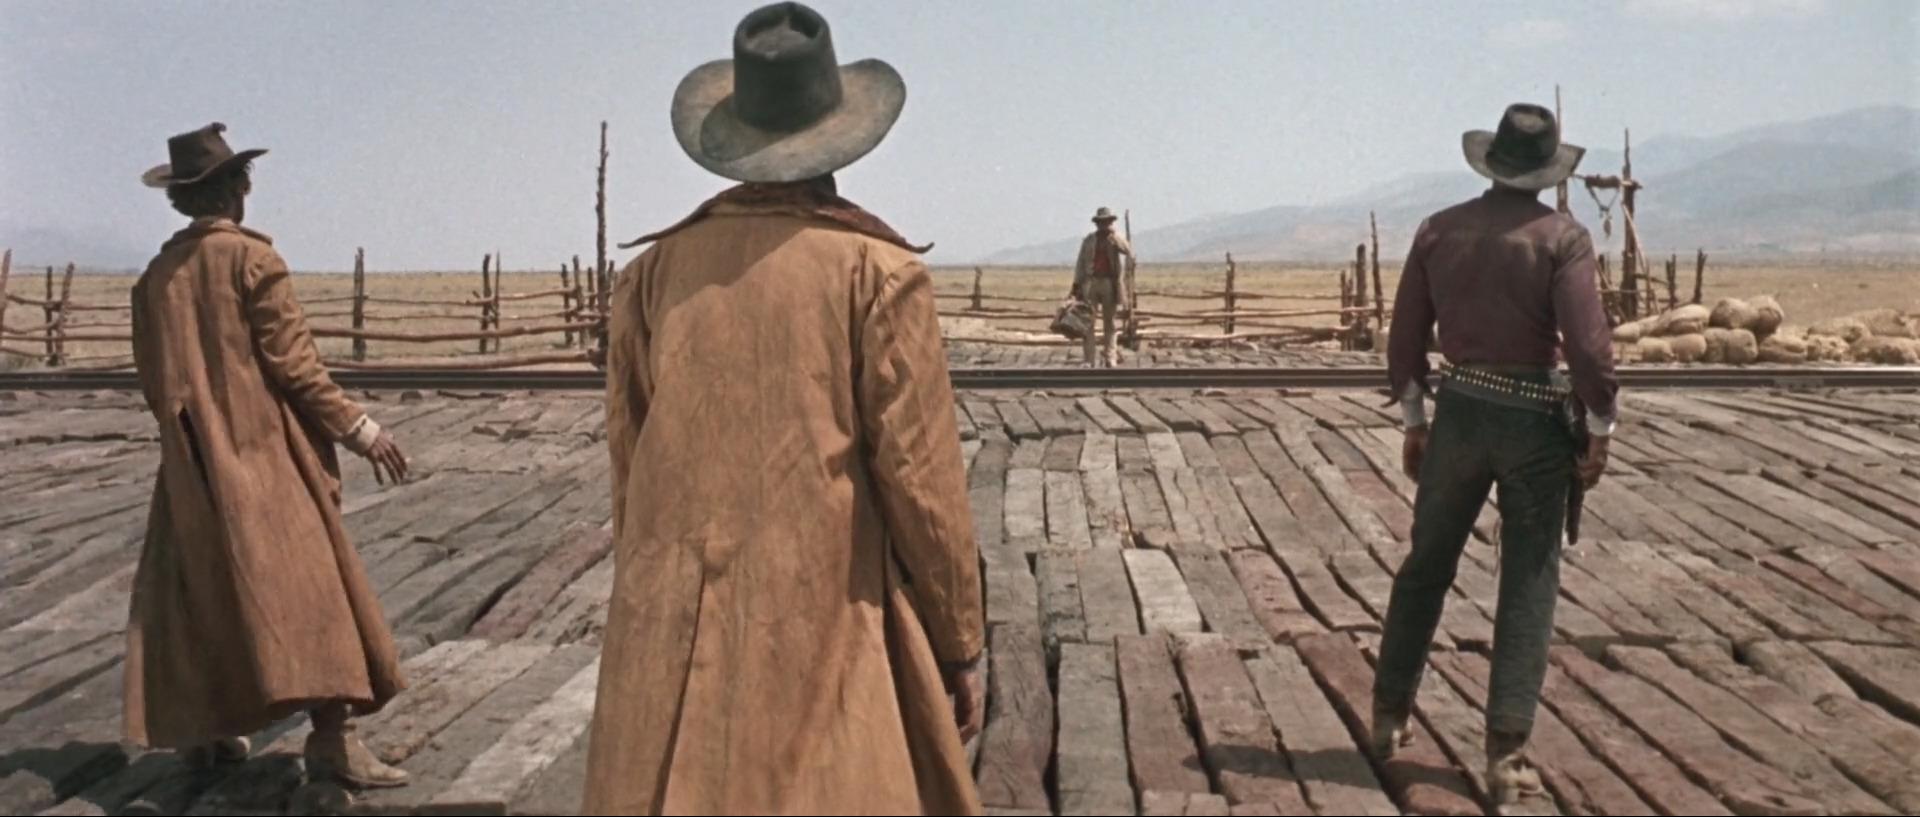 Charles Bronson spiller den navnløse, munnspill-spillende revolvermannen lengst vekk i bildet, og rød skjorte og lysere klær enn de andre i scenen. Fra filmen «Once upon a time in the West».